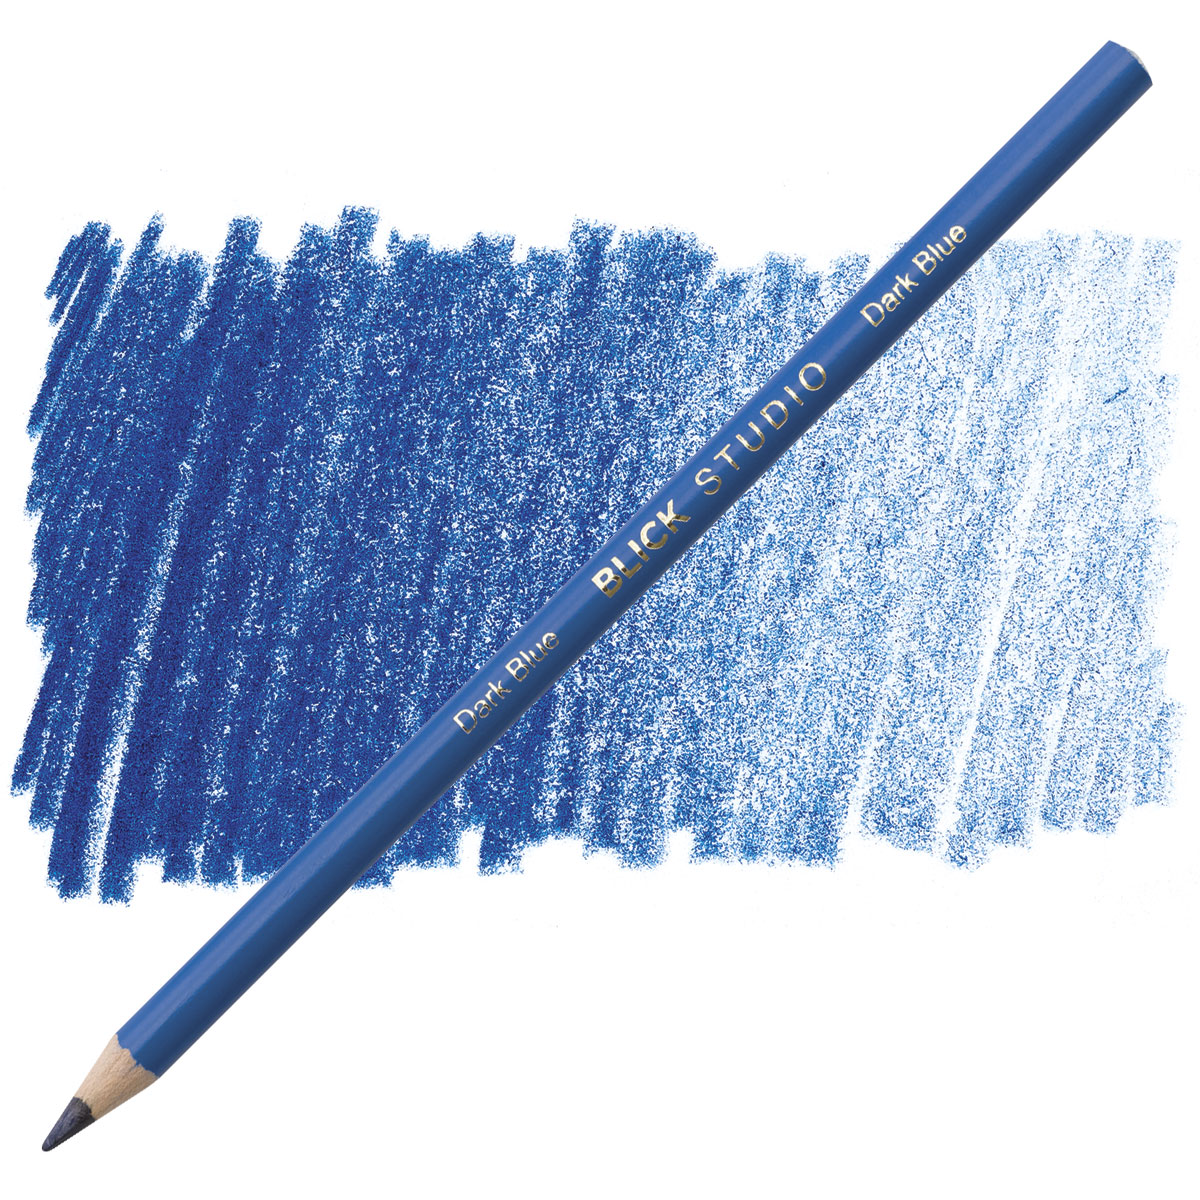 220635031 Blick Studio Artists' Colored Pencils and Sets BLICK art